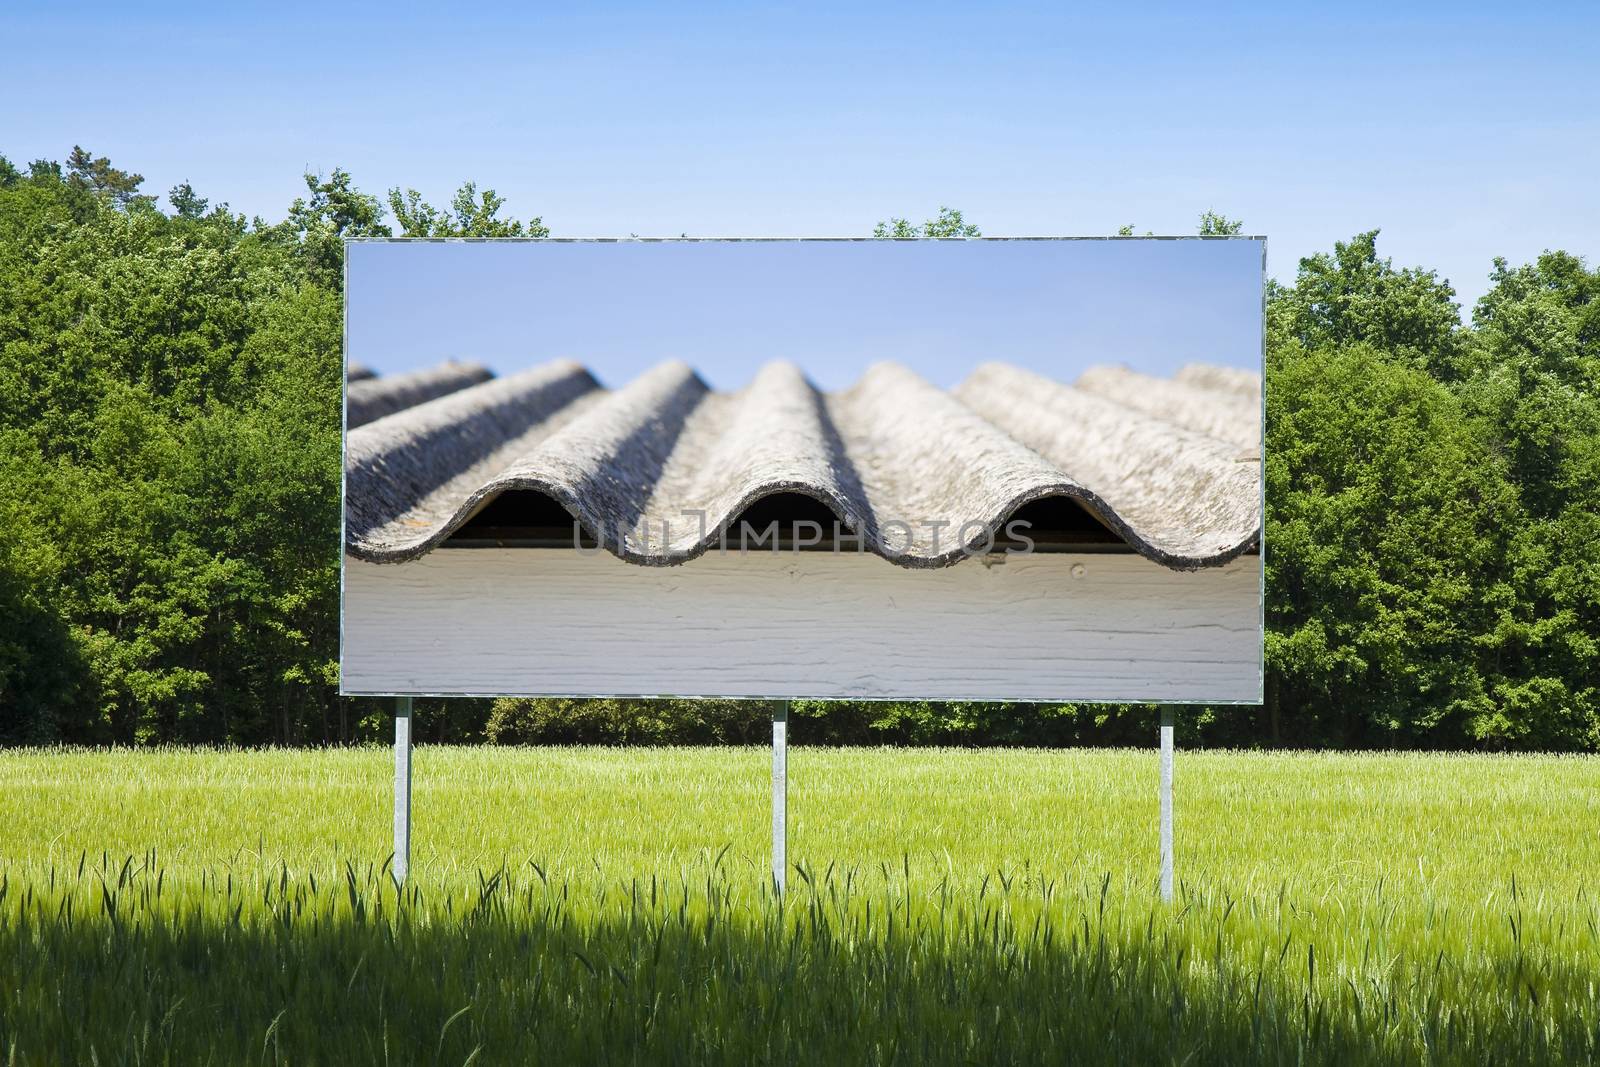 Asbestos roof on blank advertising billboard immersed in a rural scene